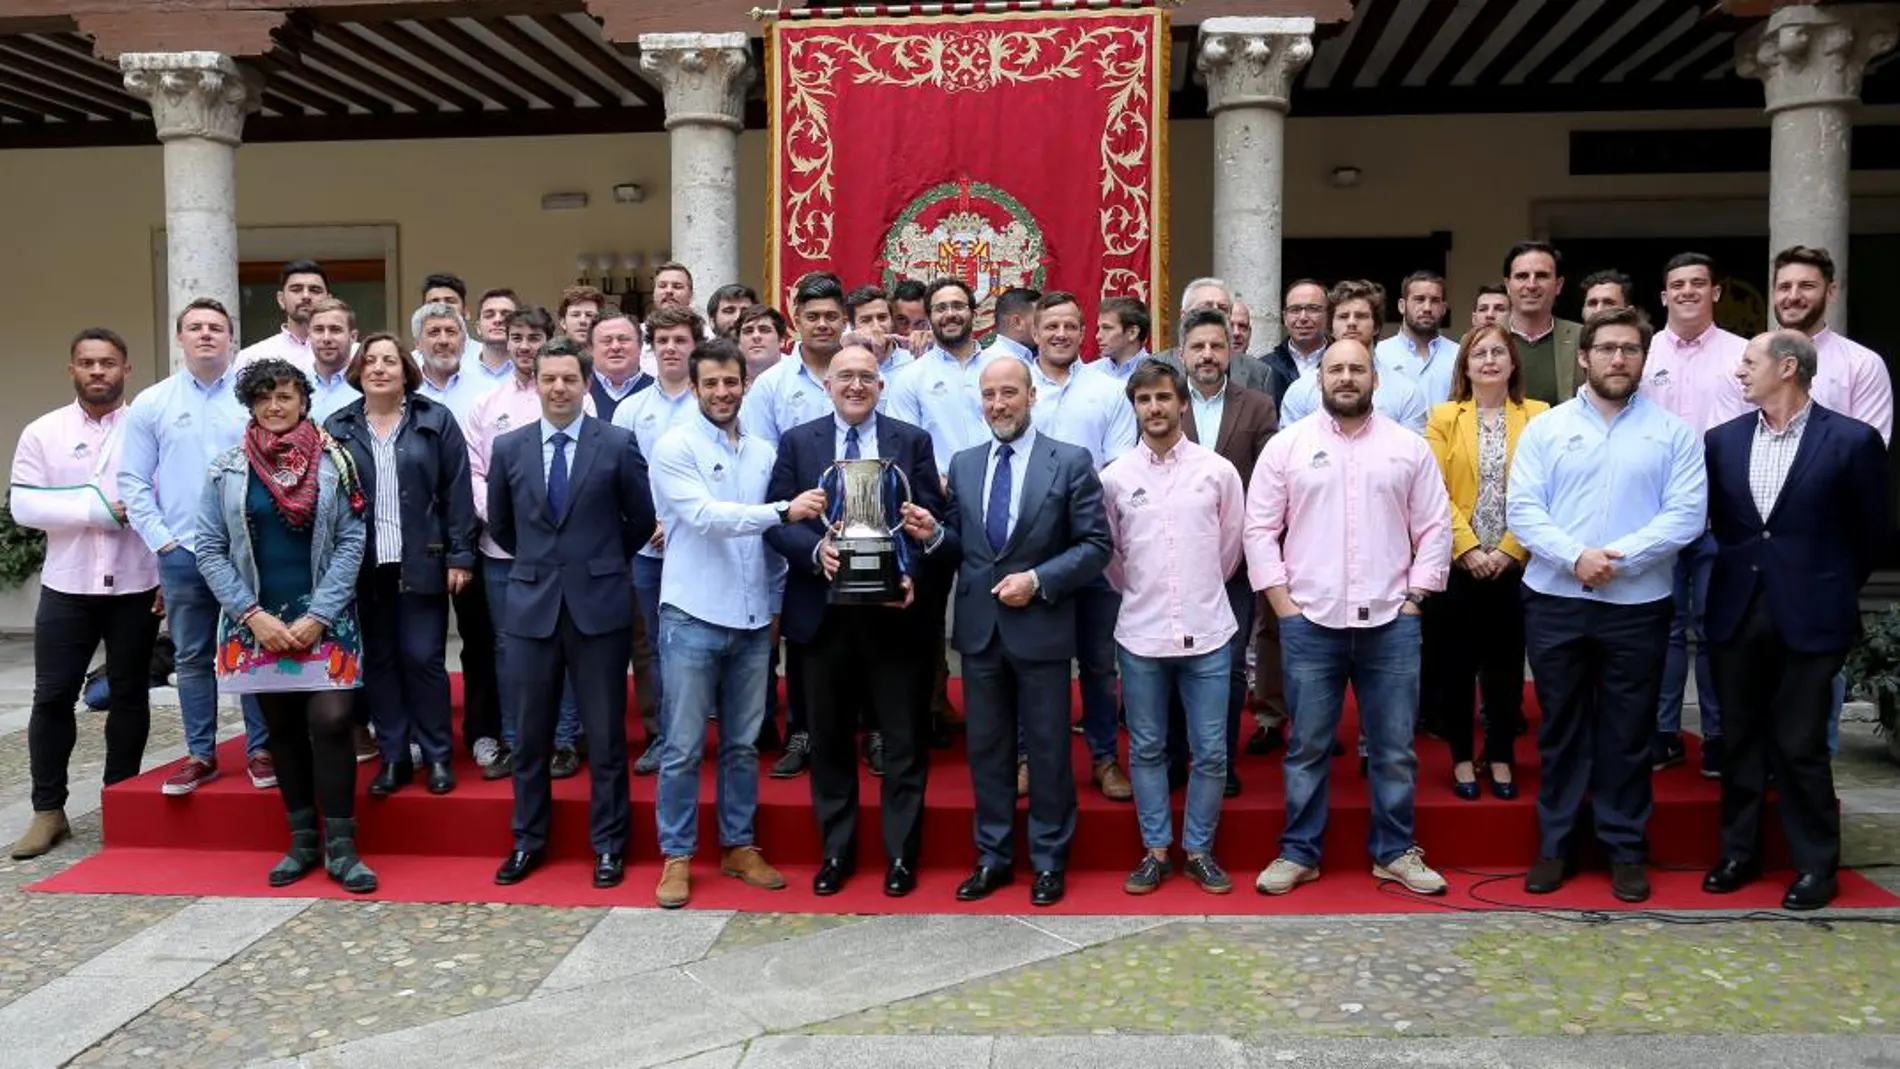 El presidente de la Diputación de Valladolid, Jesús Julio Carnero, y el equipo de gobierno provincial reciben a los jugadores, entrenadores y directivos del VRAC/Leticia Pérez/Ical